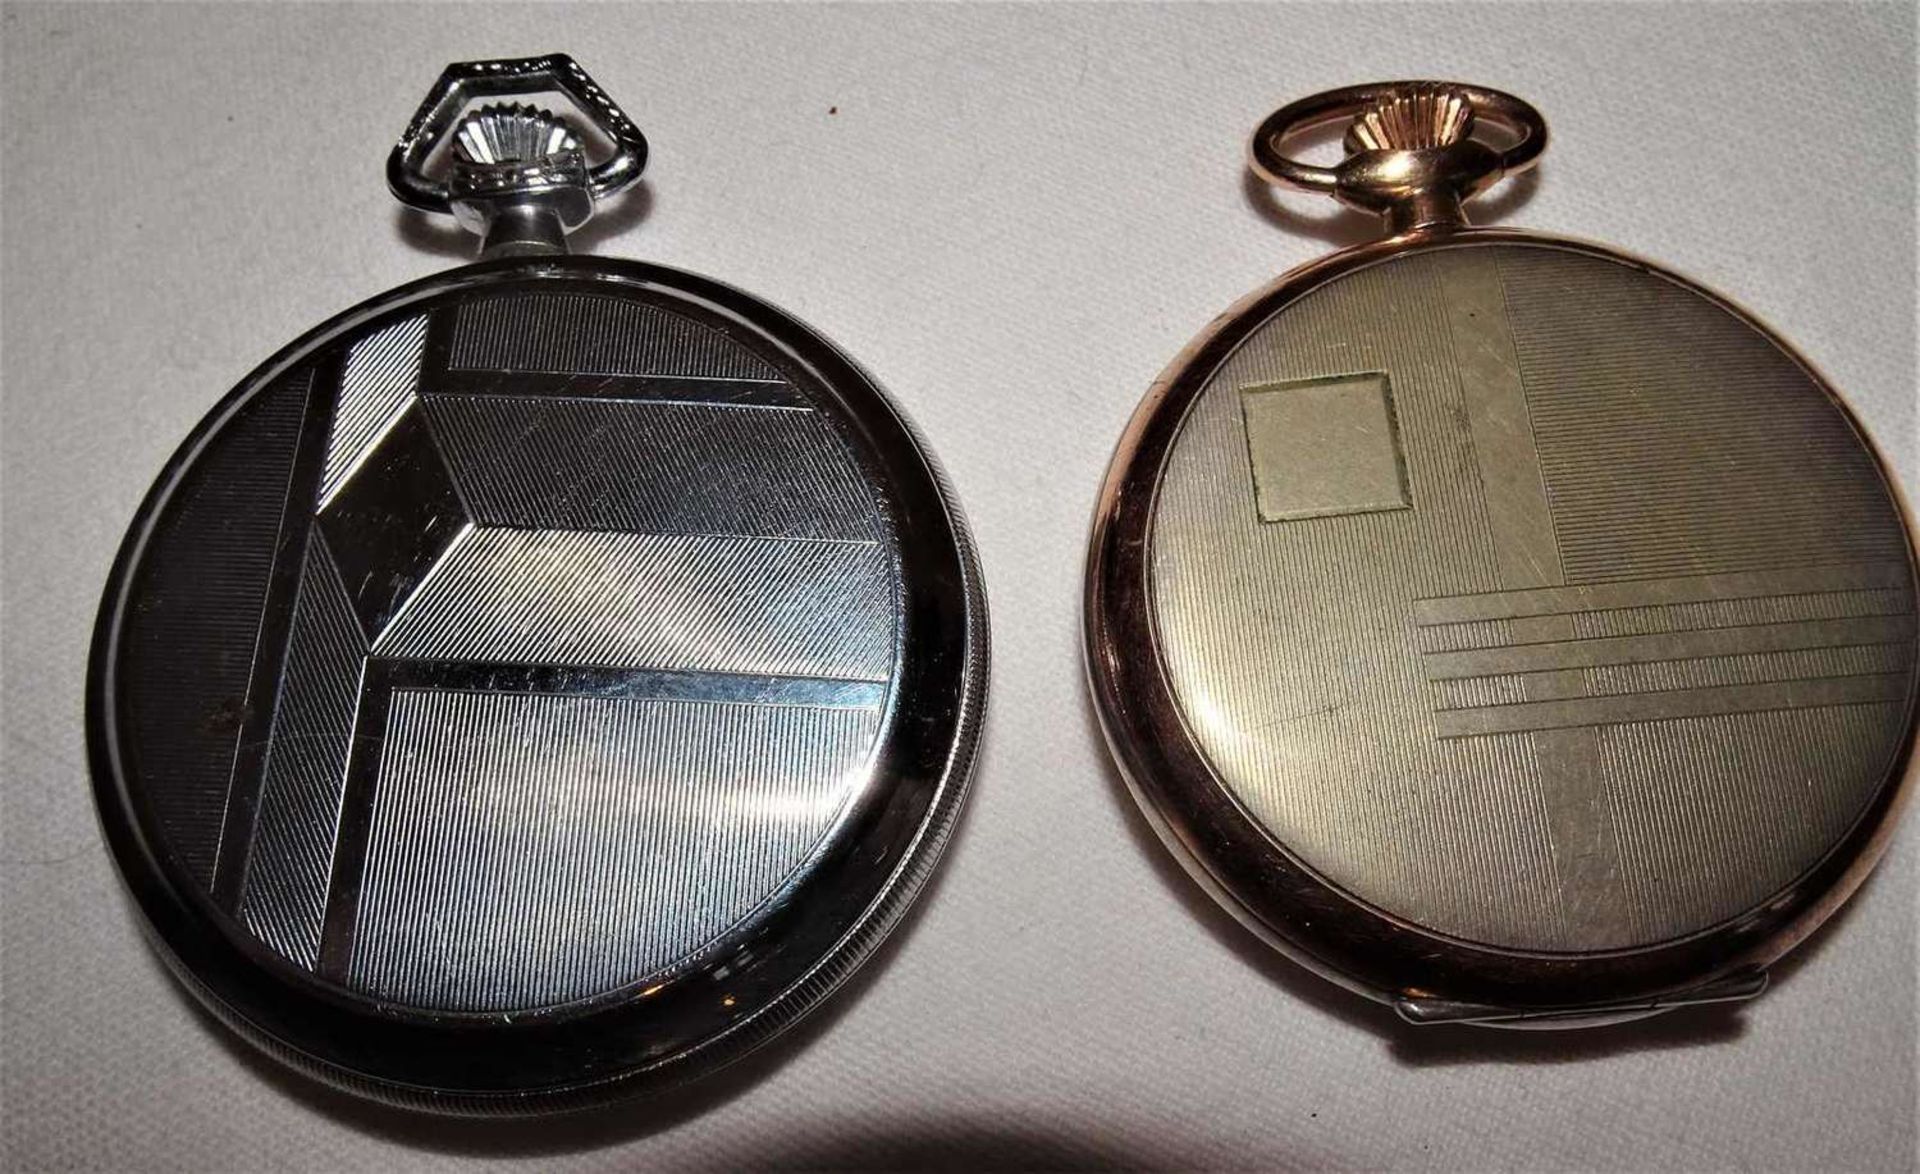 Bastlerlot Taschenuhren, dabei 1 Favor, 1x Foreign, sowie 1 Uhrenkette.Handicraftsman's pocket watc - Image 3 of 3